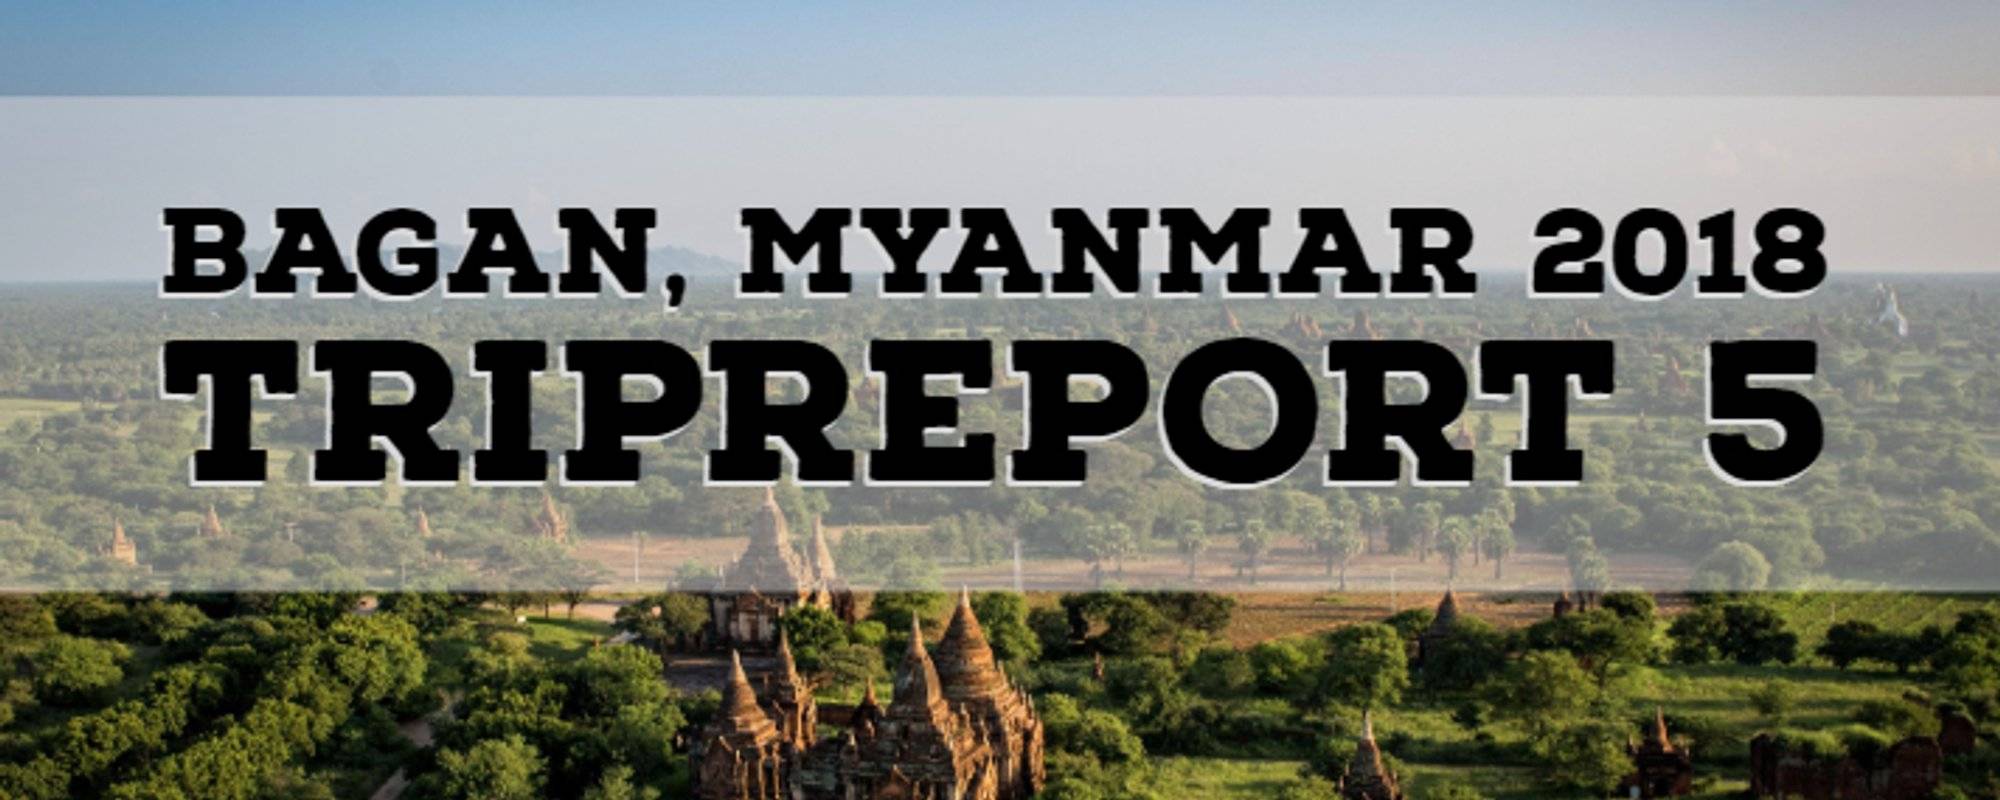 Tripreport 5 - Bagan, Myanmar